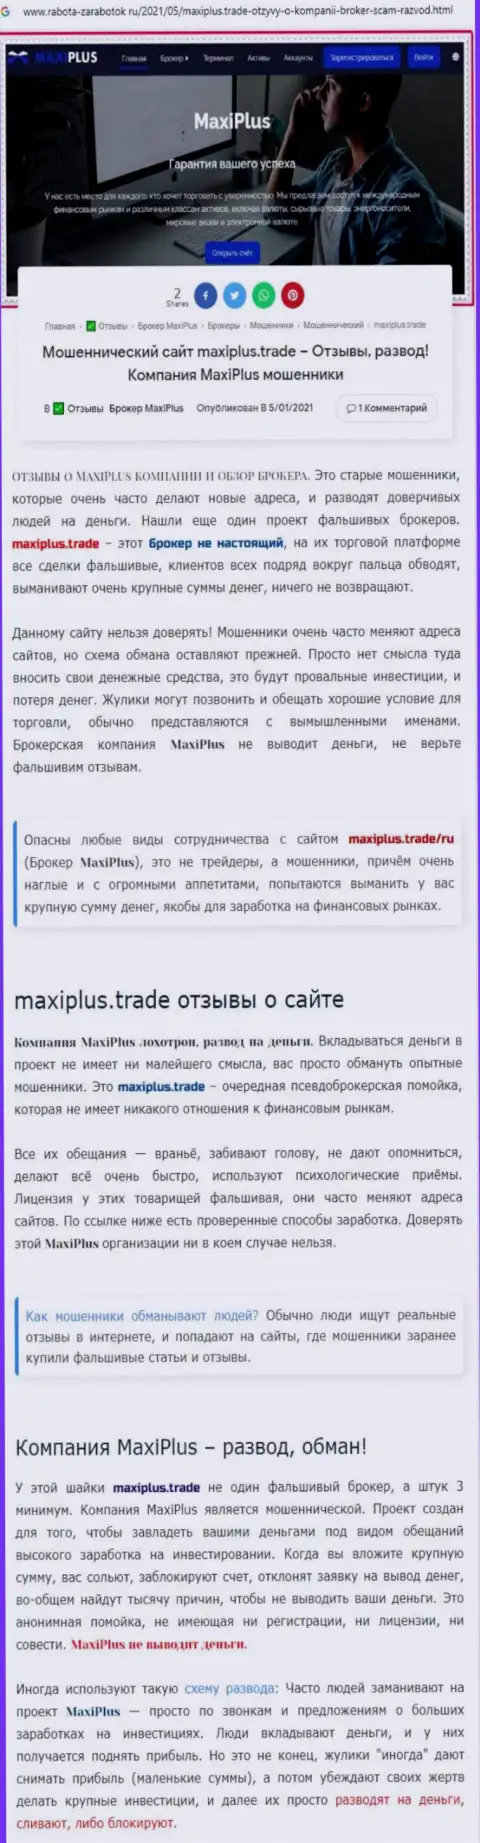 MaxiPlus Trade - это РАЗВОДИЛЫ ! Принципы деятельности ЛОХОТРОНА (обзор неправомерных деяний)